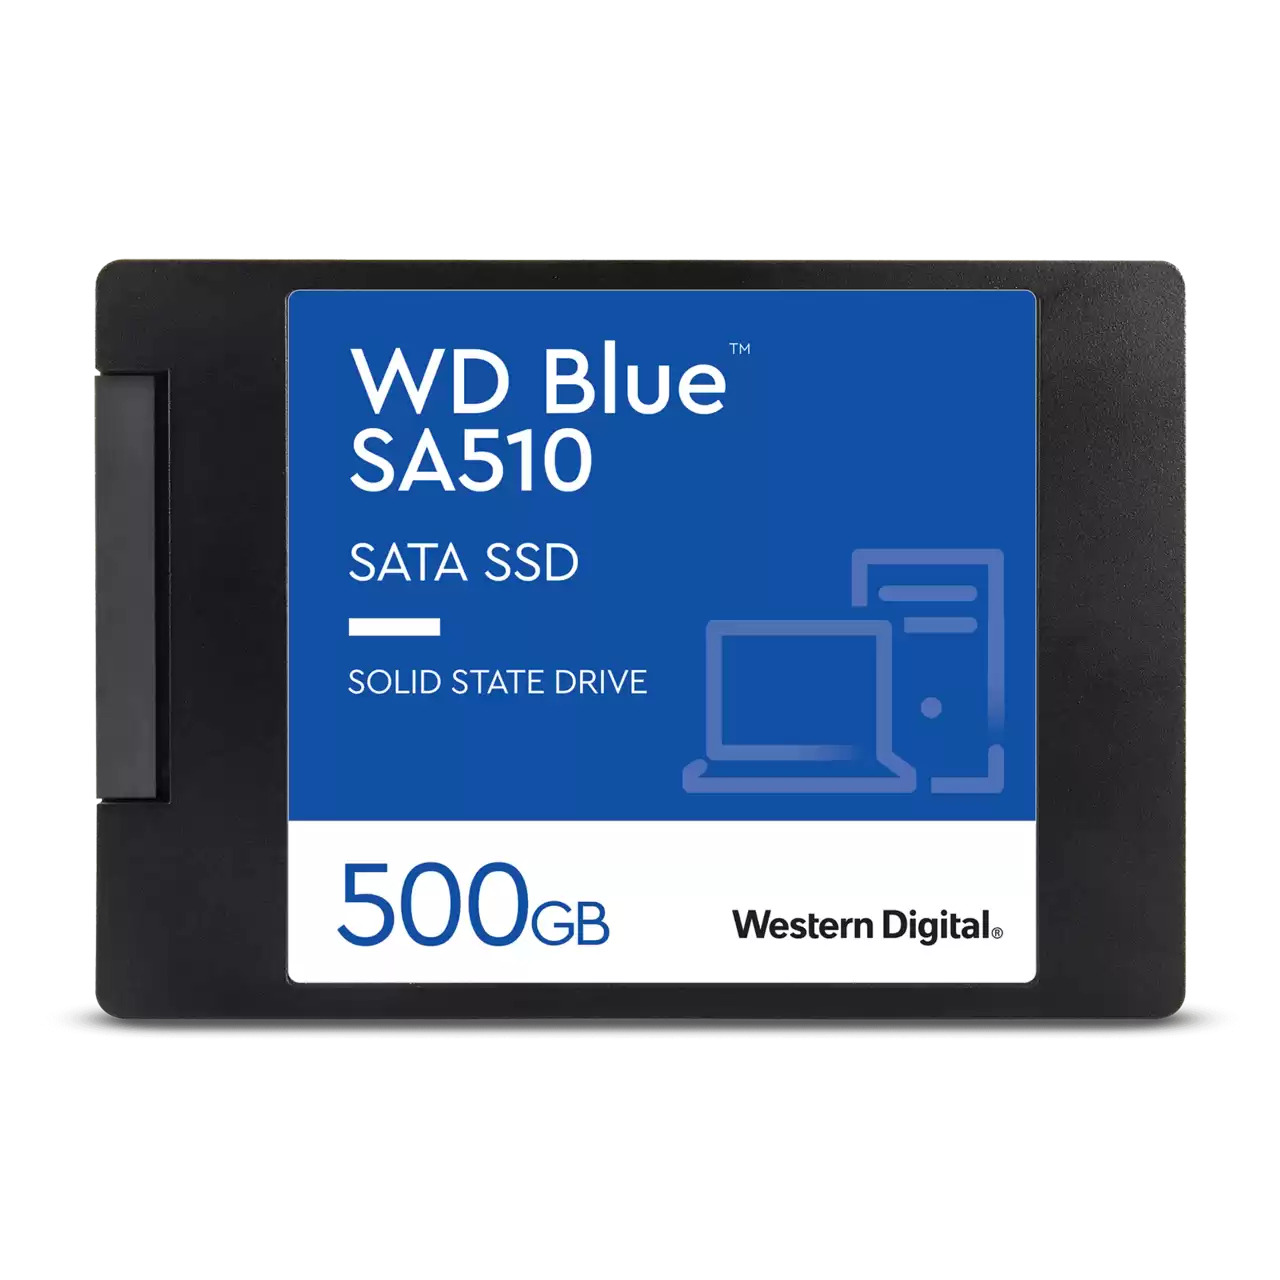 Hard disk ssd western digital wd blue sa510 500gb 2.5